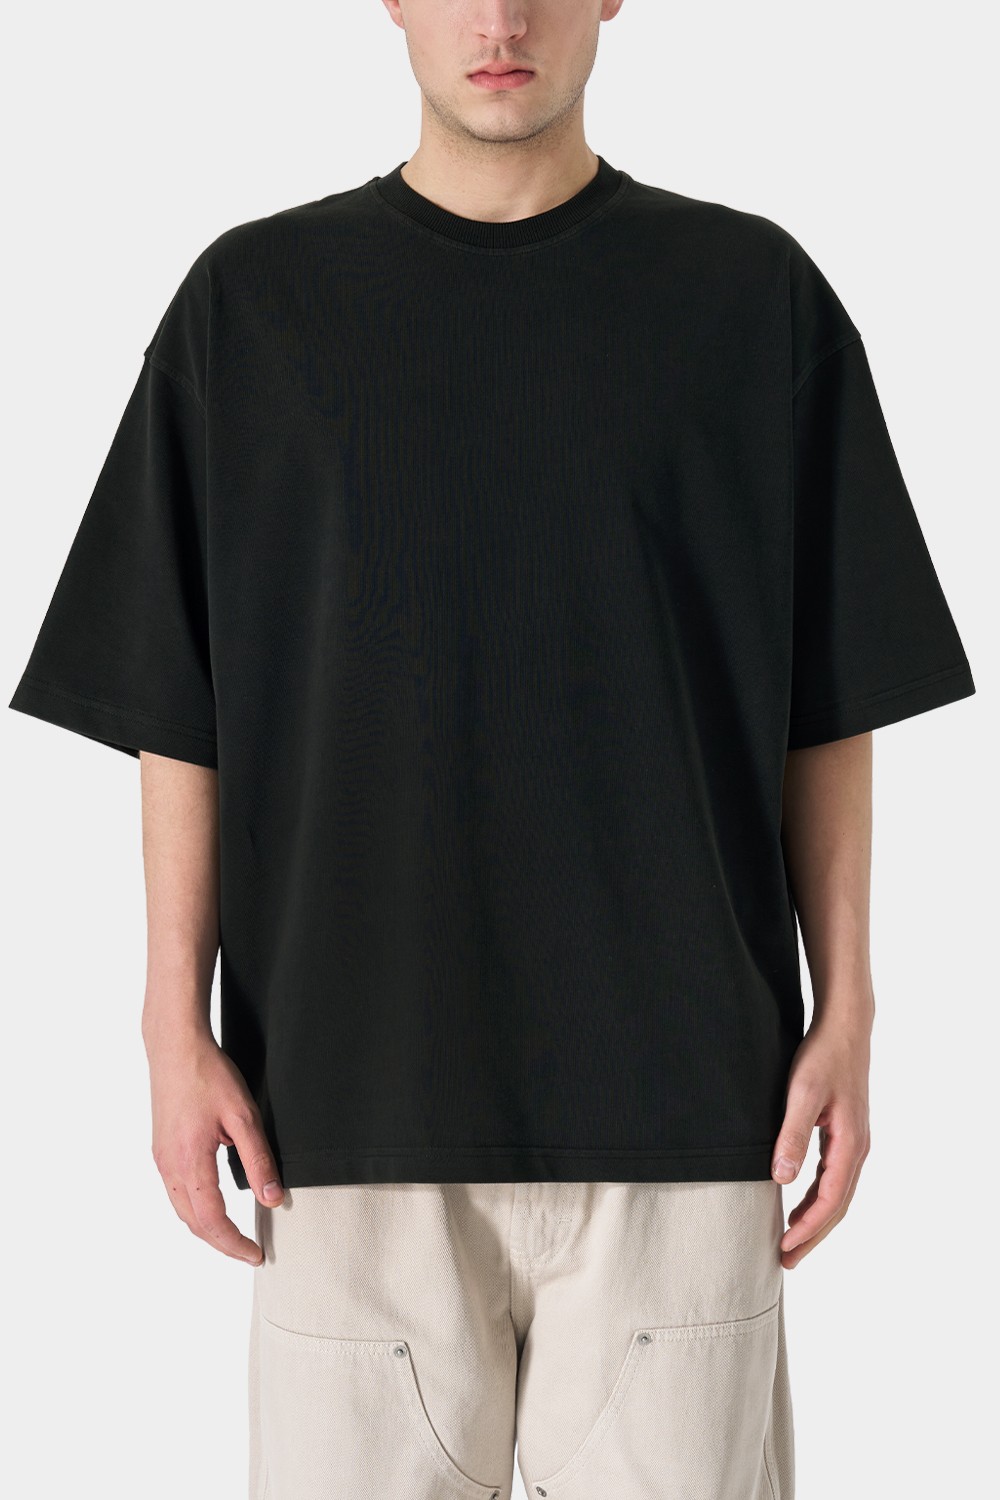 Sohigh Blank Oversized T-Shirt - Washed Black